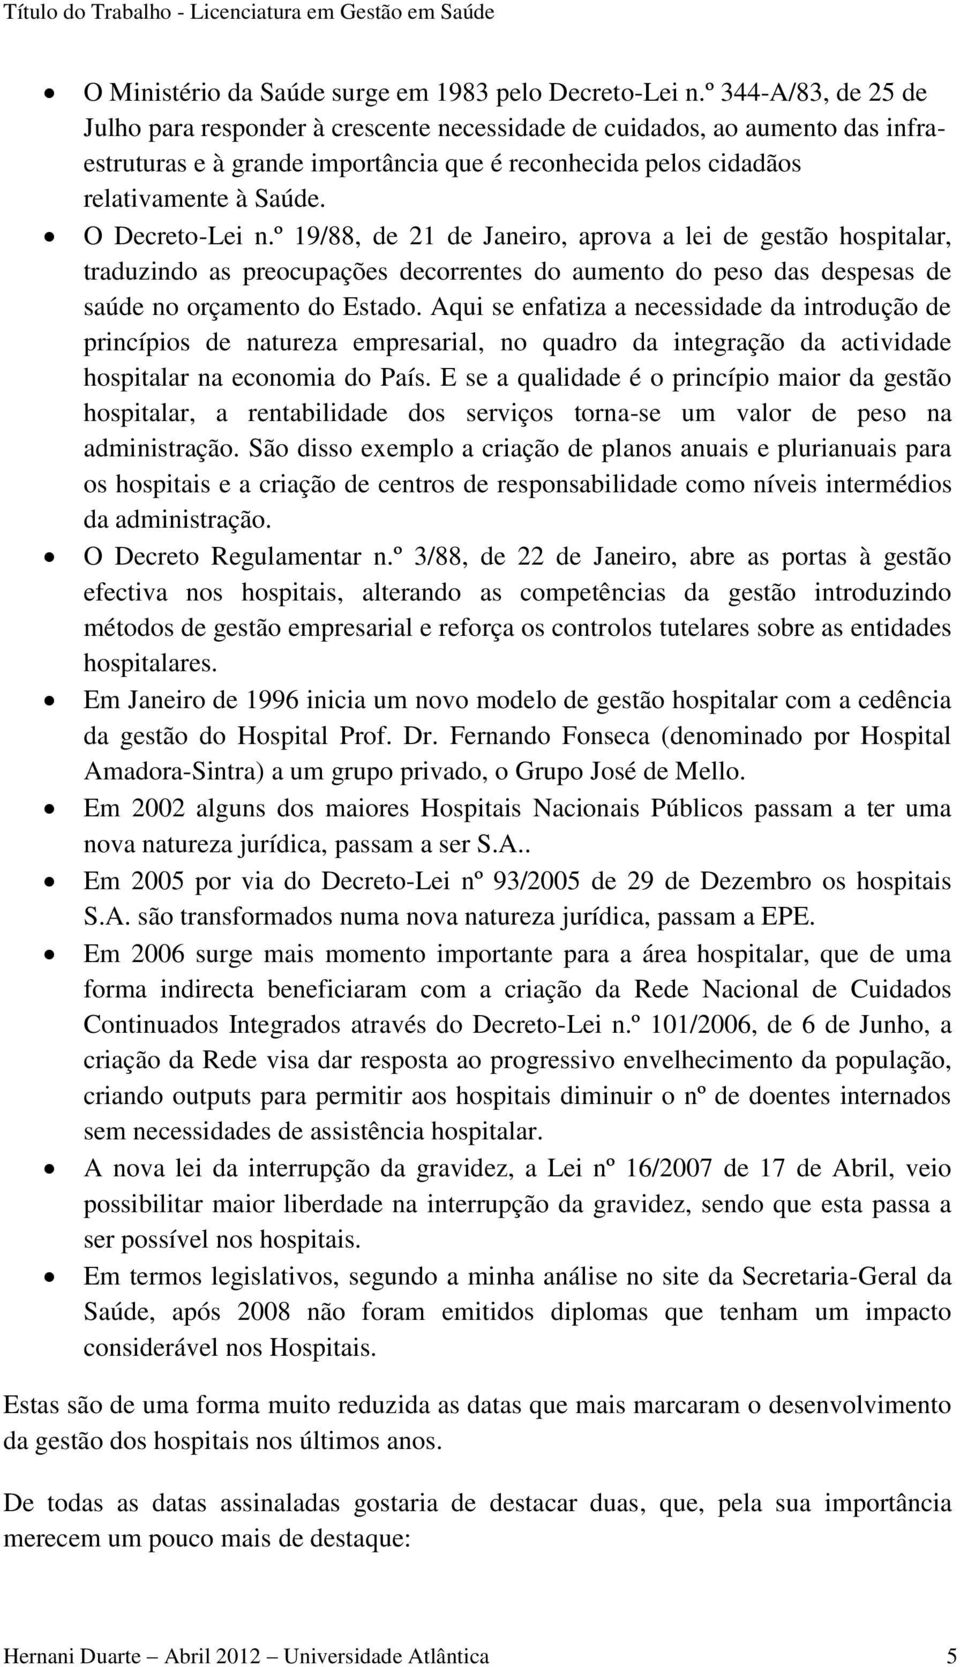 O Decreto-Lei n.º 19/88, de 21 de Janeiro, aprova a lei de gestão hospitalar, traduzindo as preocupações decorrentes do aumento do peso das despesas de saúde no orçamento do Estado.